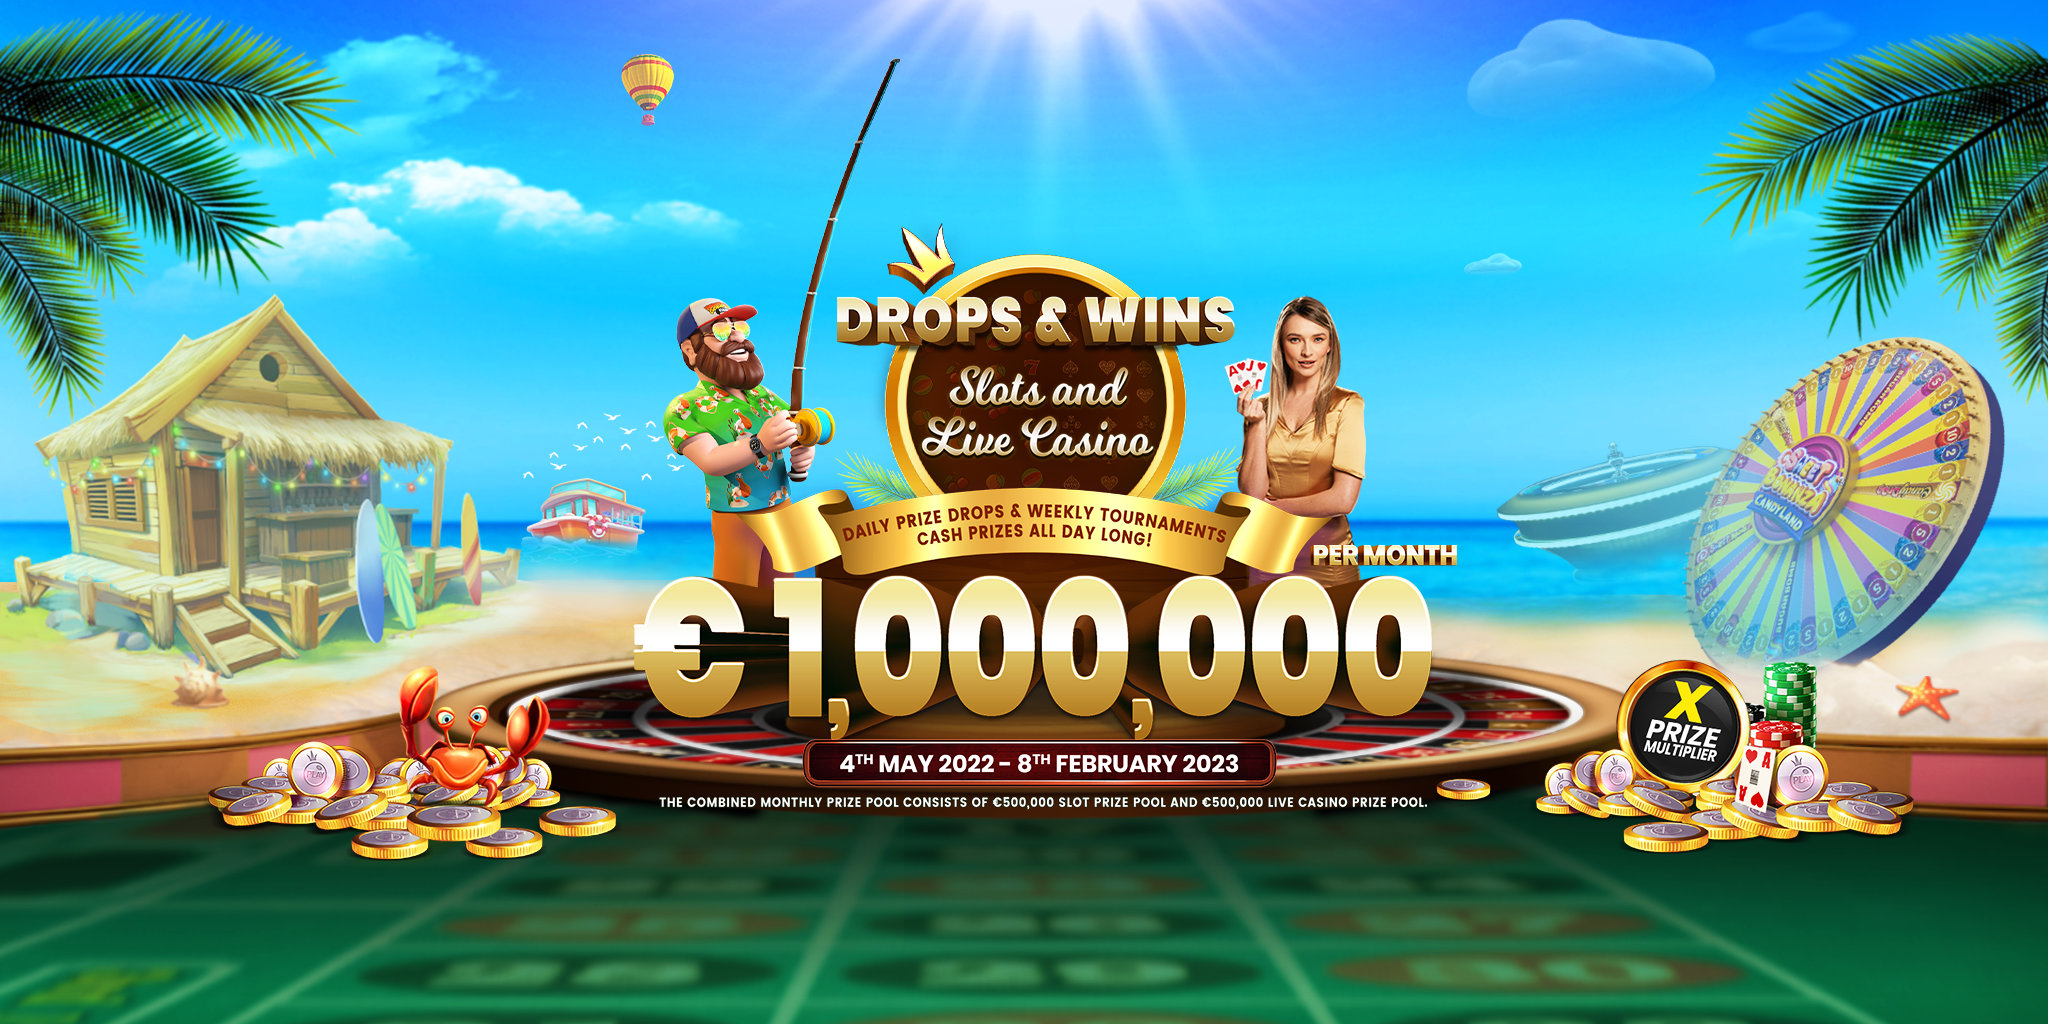 Play casino slot games online как удалить казино вулкан из яндекс браузера на